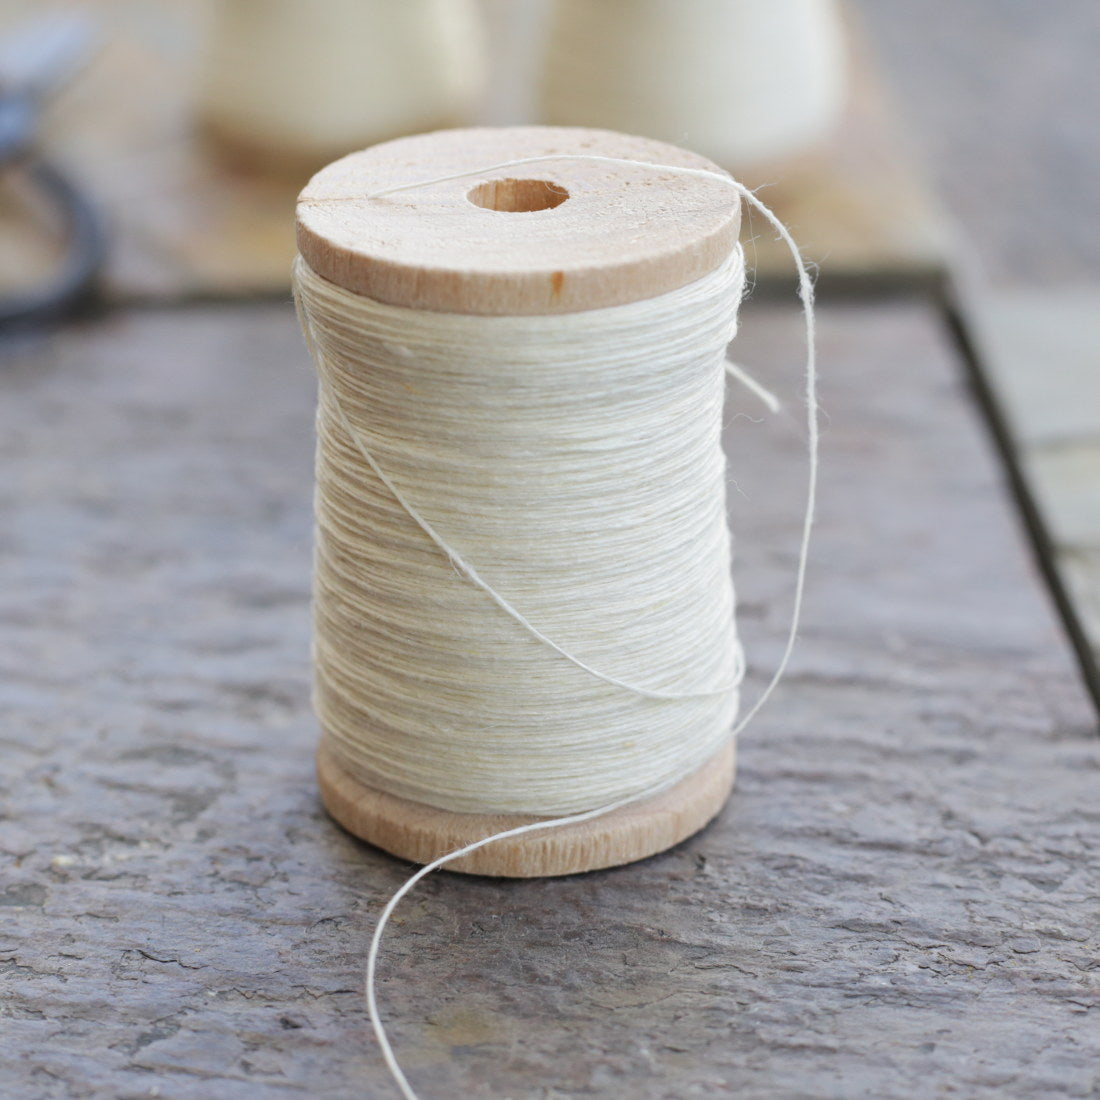  FANDOL 100% Natural Linen Thread 804 feet Waxed Thread